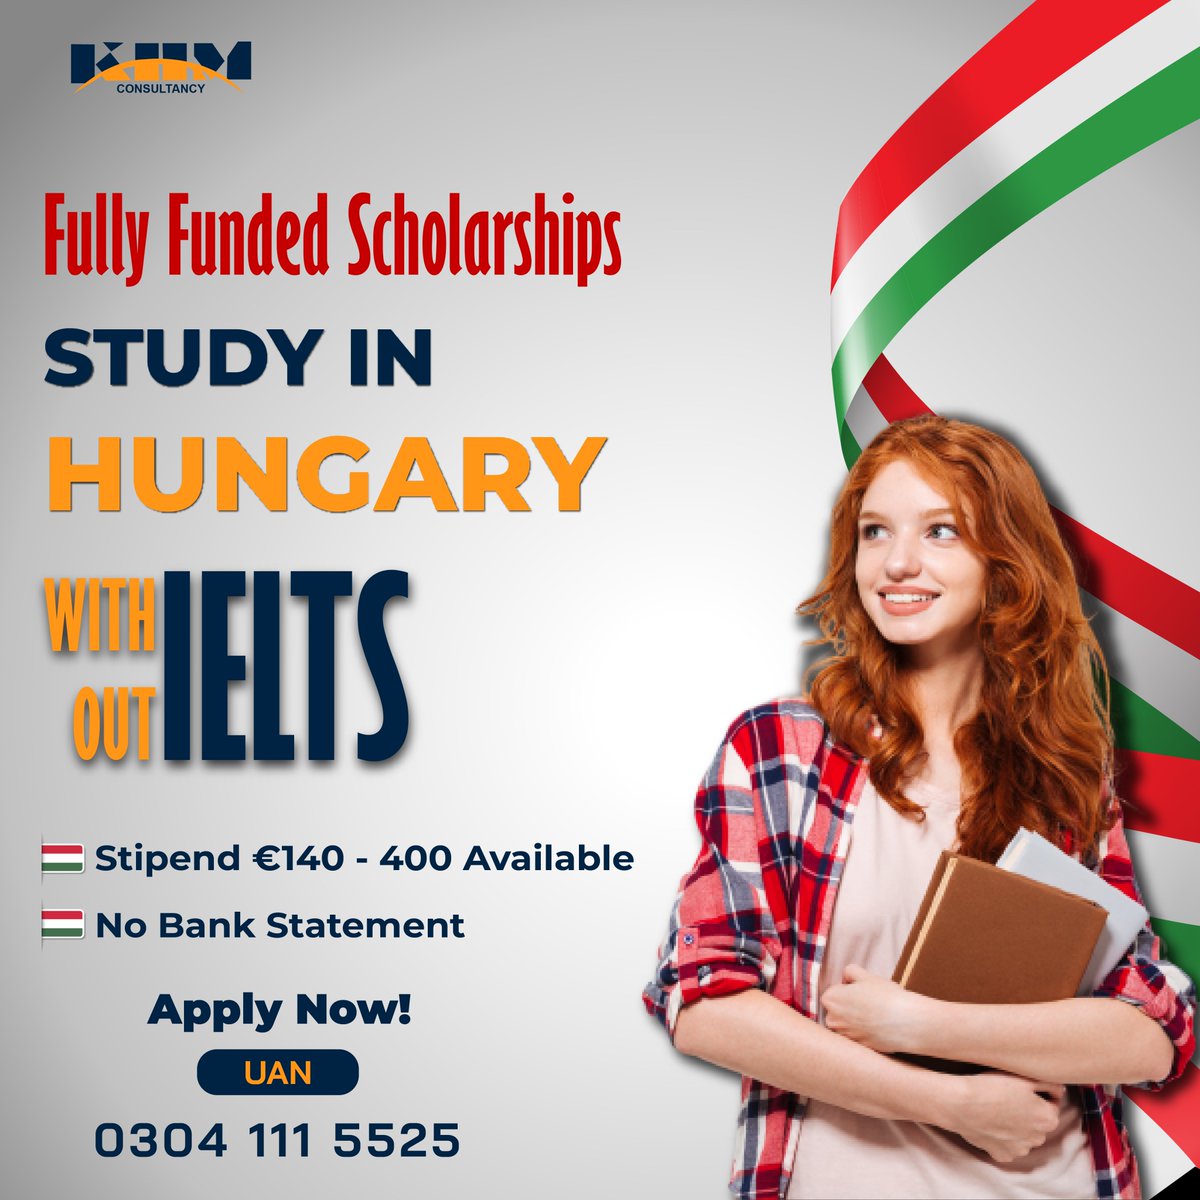 🌟Exciting News for Pakistani Students! 🌟
#StudyAbroad #ScholarshipOpportunity #HungaryEducation #StipendiumHunga